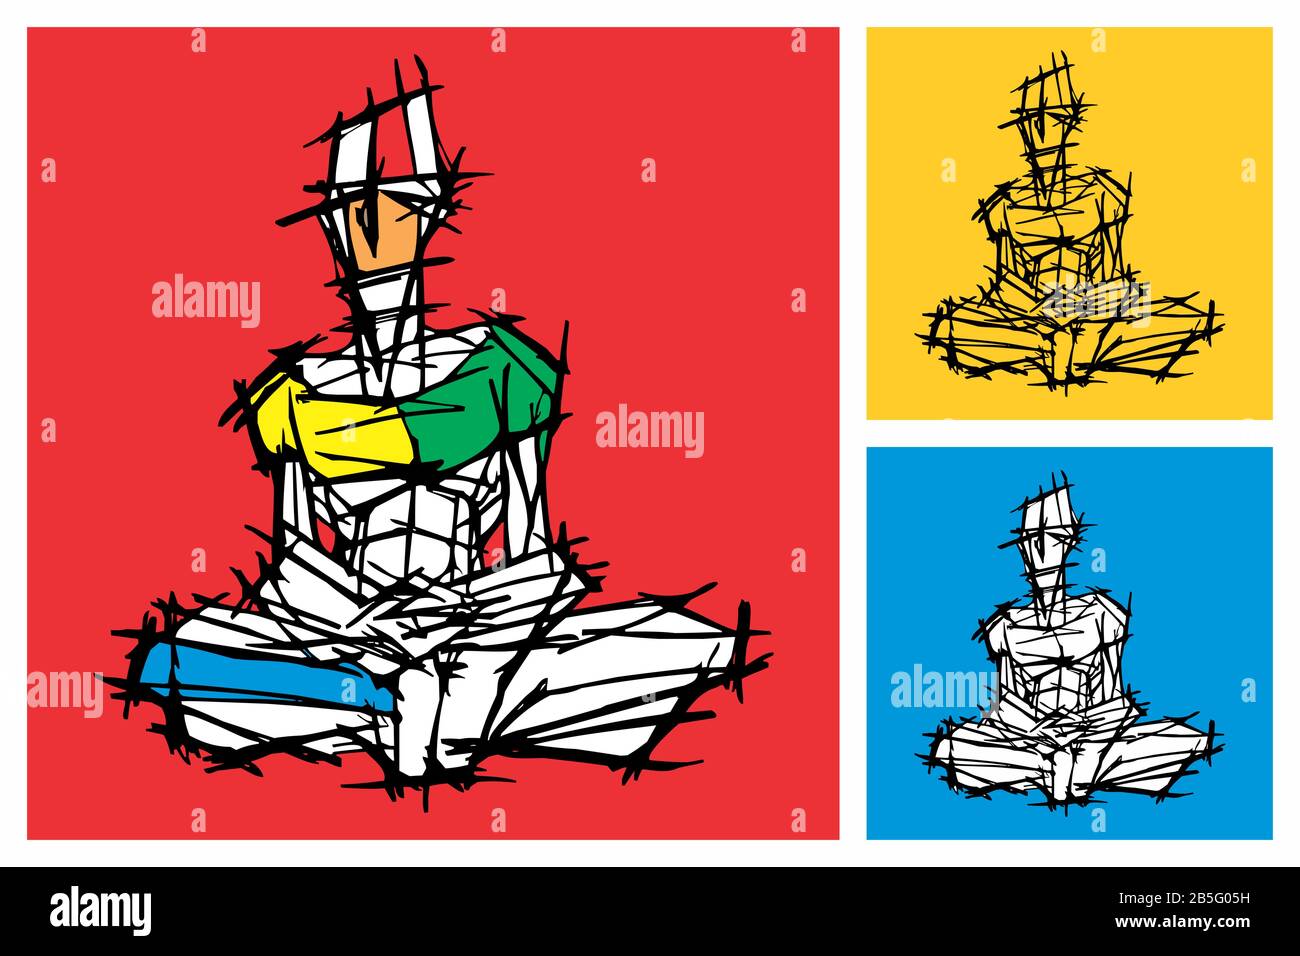 Tuschenzeichnung (Hatch-Arbeit) der Person der Meditationsstellung (Yoga, Denken) in einem Texturierten, Einzigartigen Stil. Künstlerische Querlinien Manuelle Abbildung auf Vec gestellt Stock Vektor